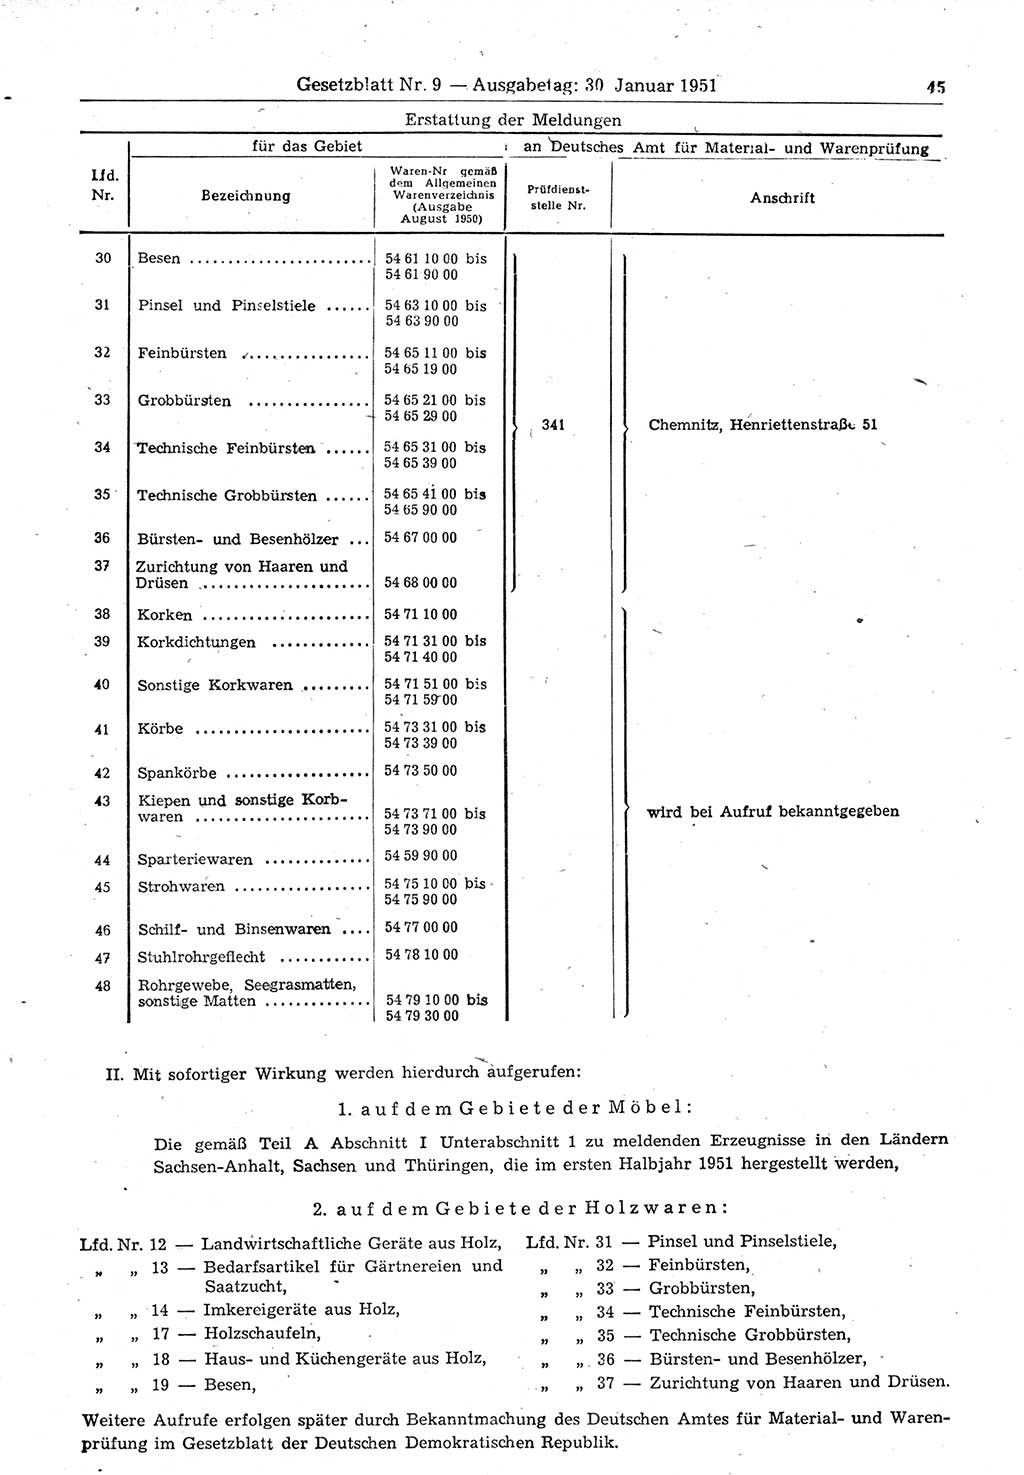 Gesetzblatt (GBl.) der Deutschen Demokratischen Republik (DDR) 1951, Seite 45 (GBl. DDR 1951, S. 45)